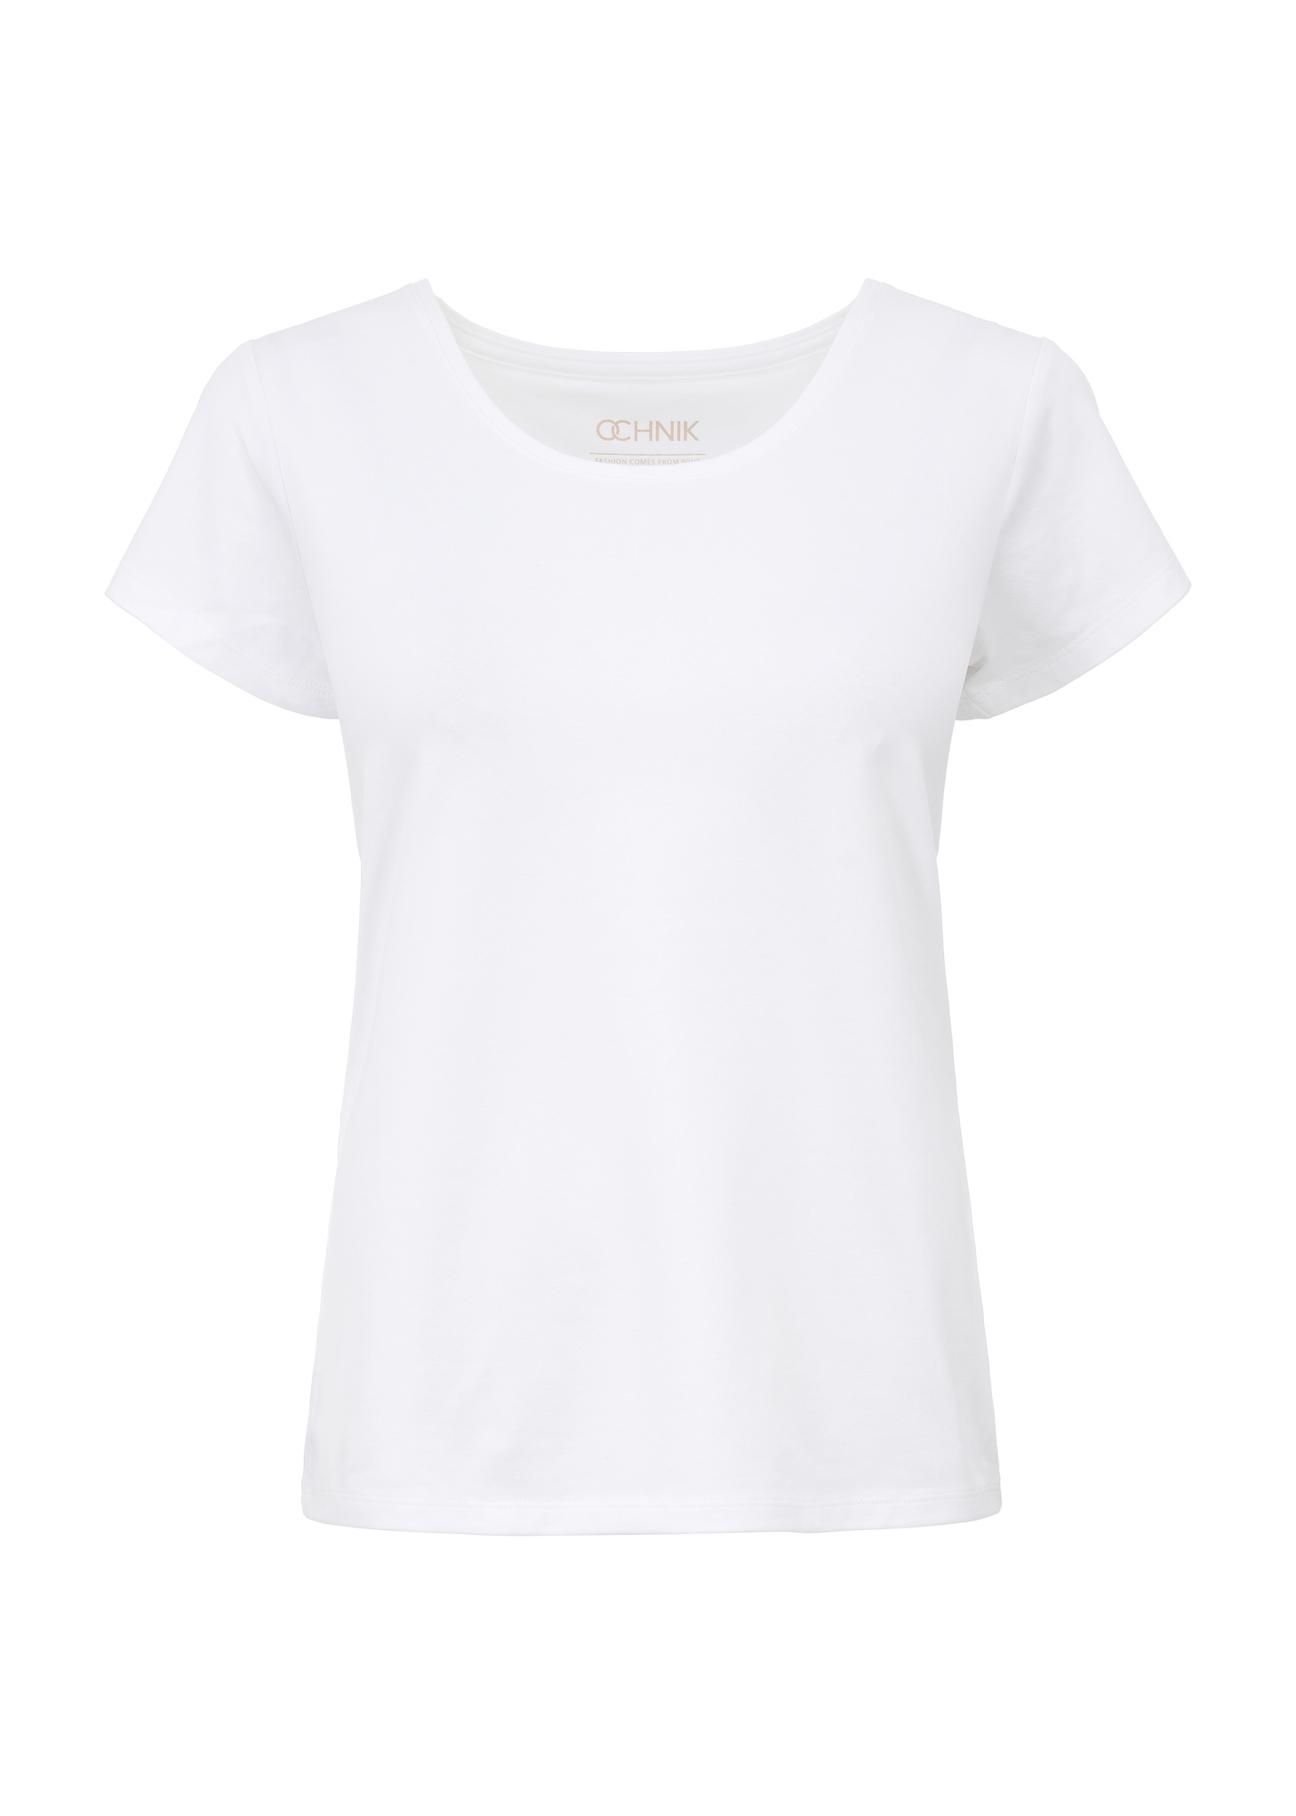 Biały T-shirt damski basic TSHDT-0111-11(KS)